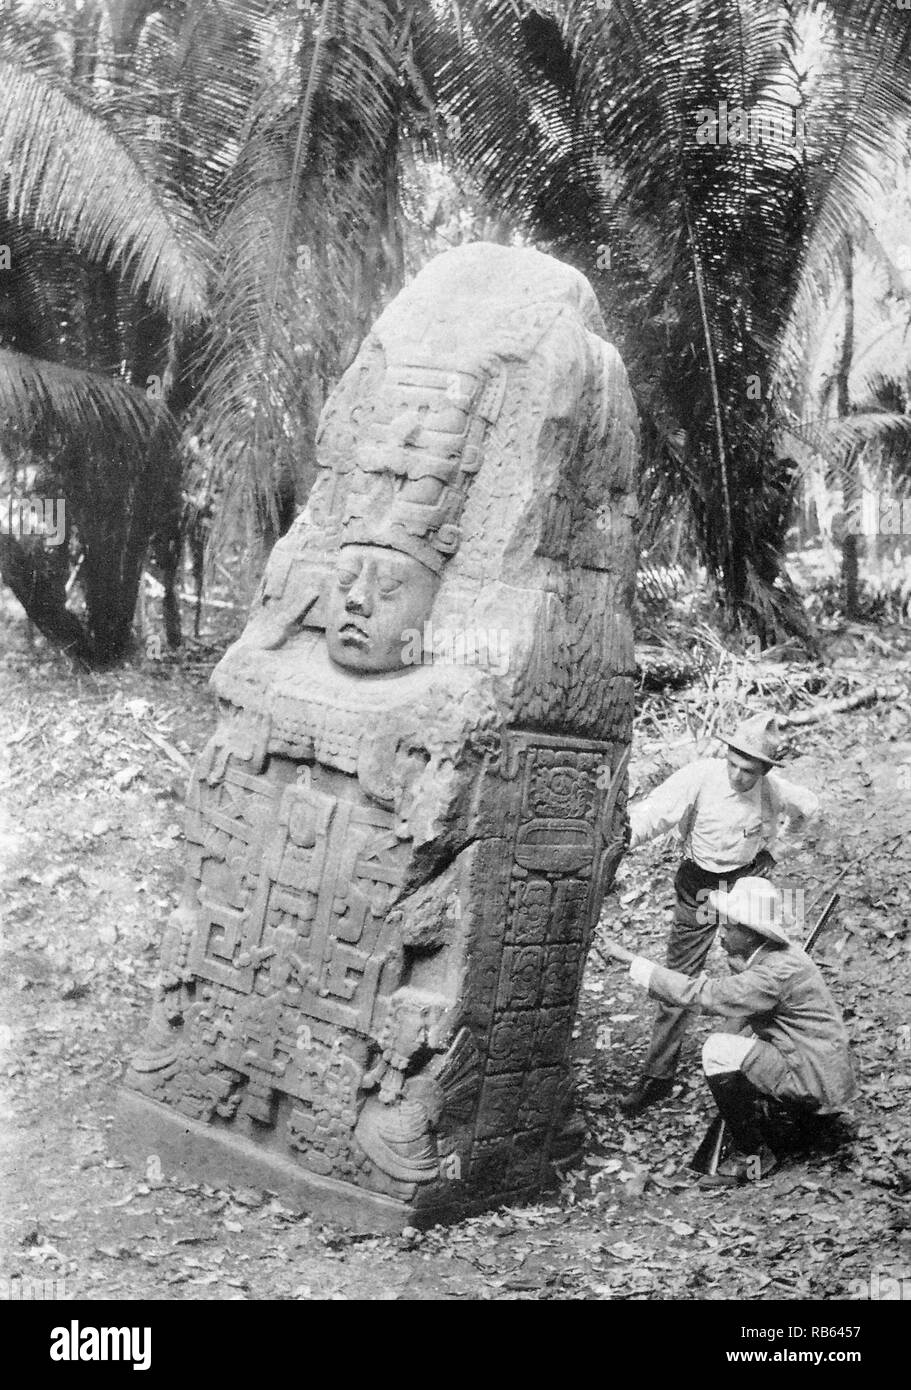 Foto von der Stele in Quirigua. Guatemala. Stele für die Königin von Quirigua. An den Seiten sind Hieroglyphen der Maya Manuskripte gesehen. Vom 900 AD (Photograpgh datiert 1915). Stockfoto